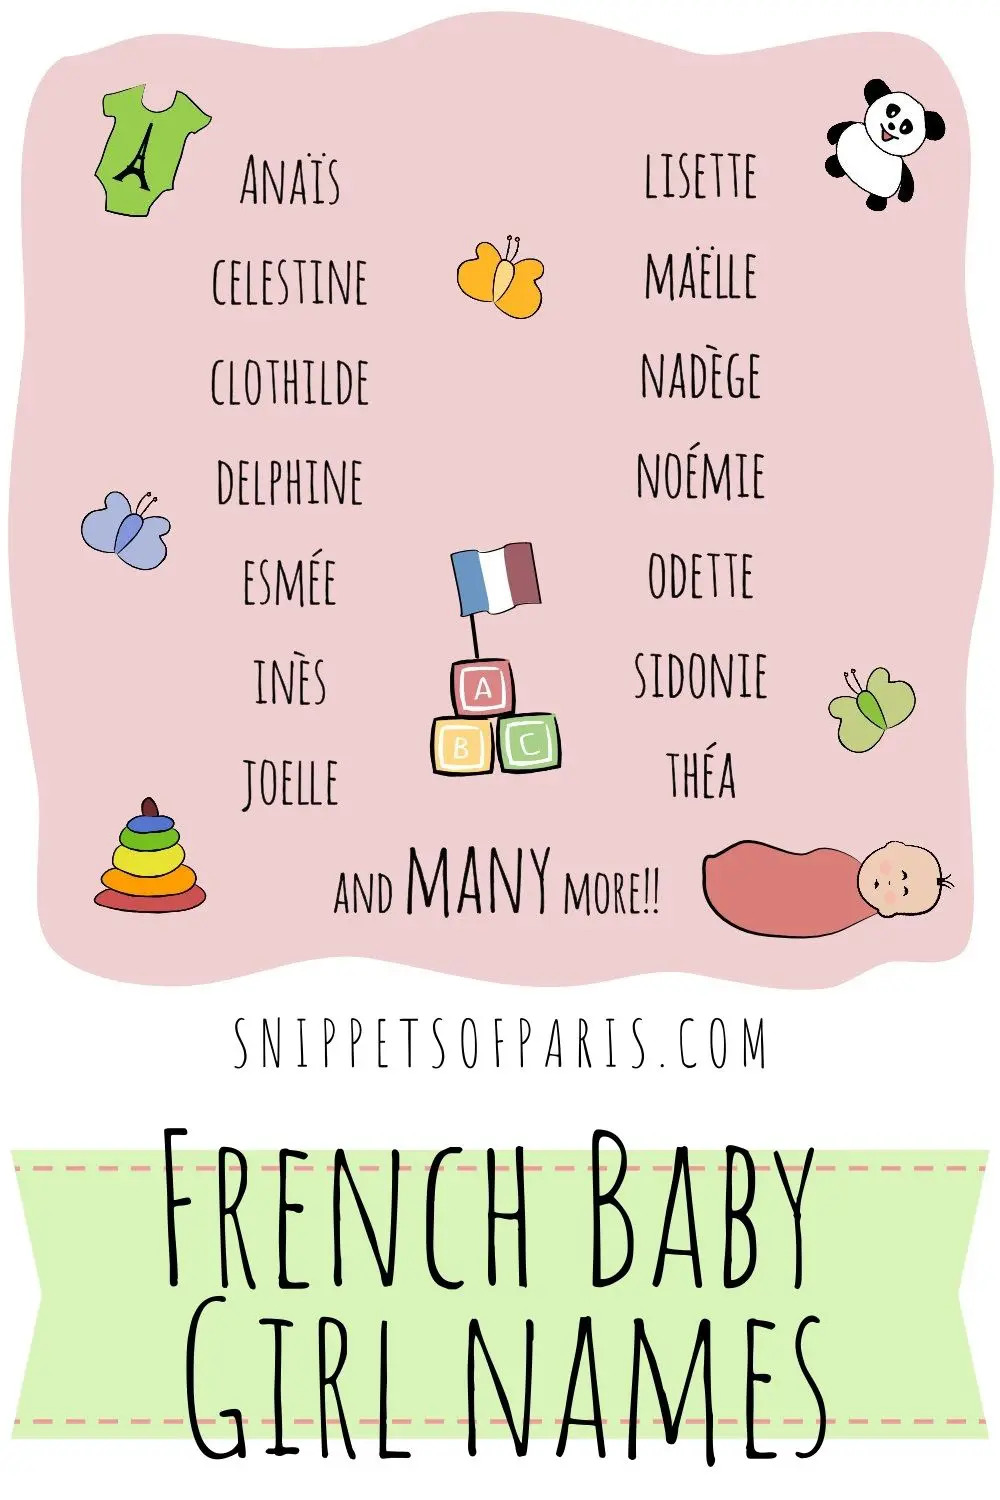 Французские имена более 300 самых популярных французских имен и фамилий со значениями